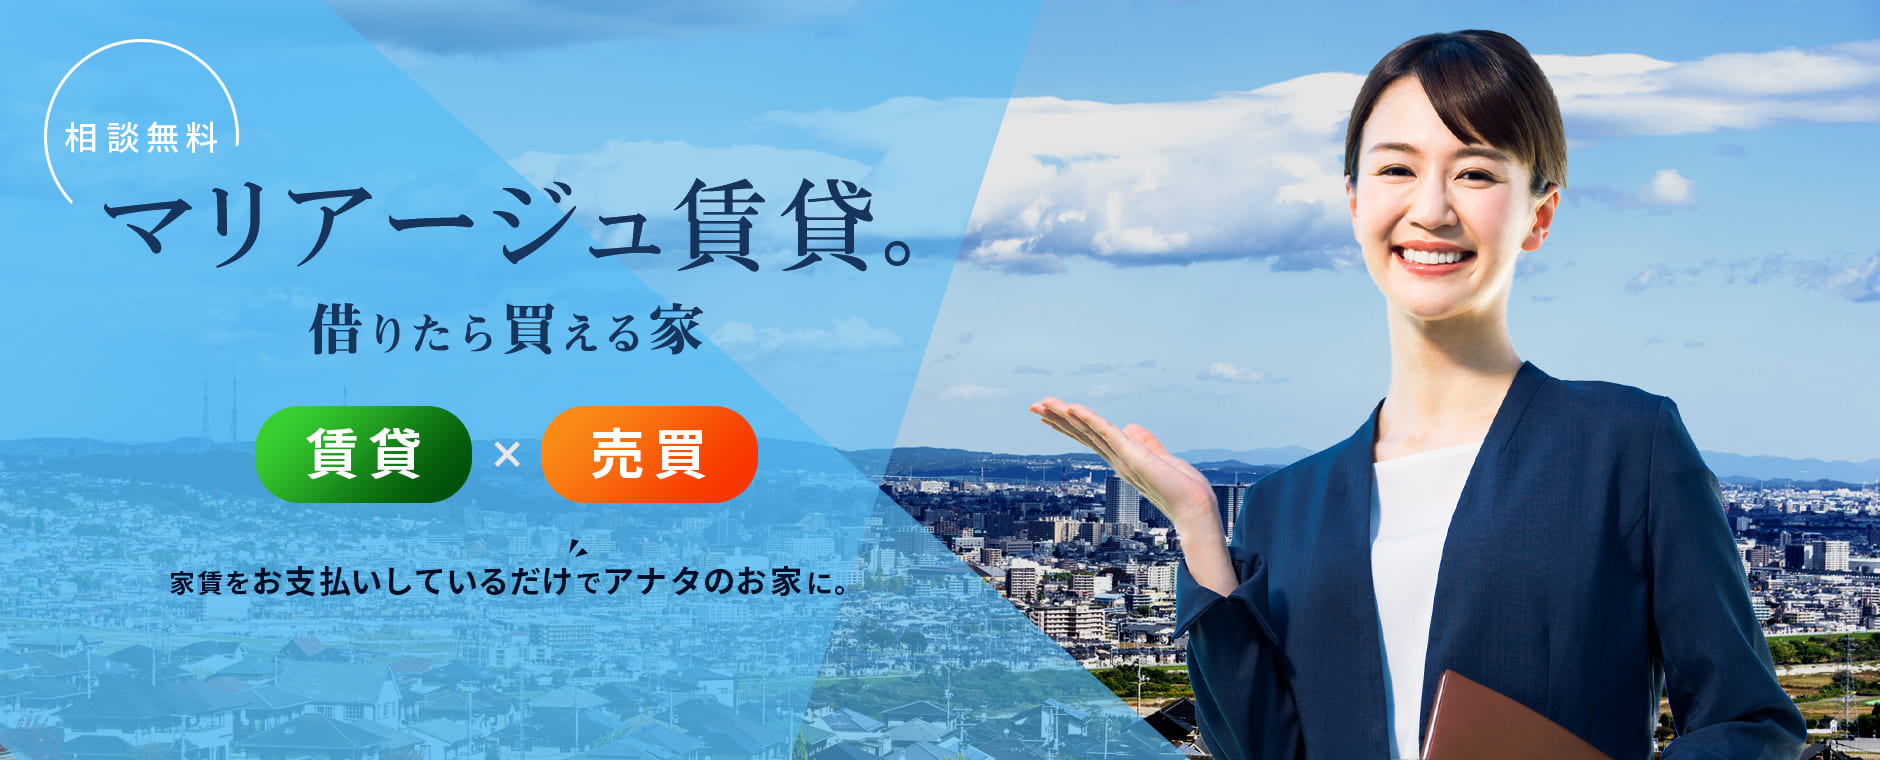 横浜で譲渡型賃貸住宅のことなら横浜の「マリアージュ賃貸。」